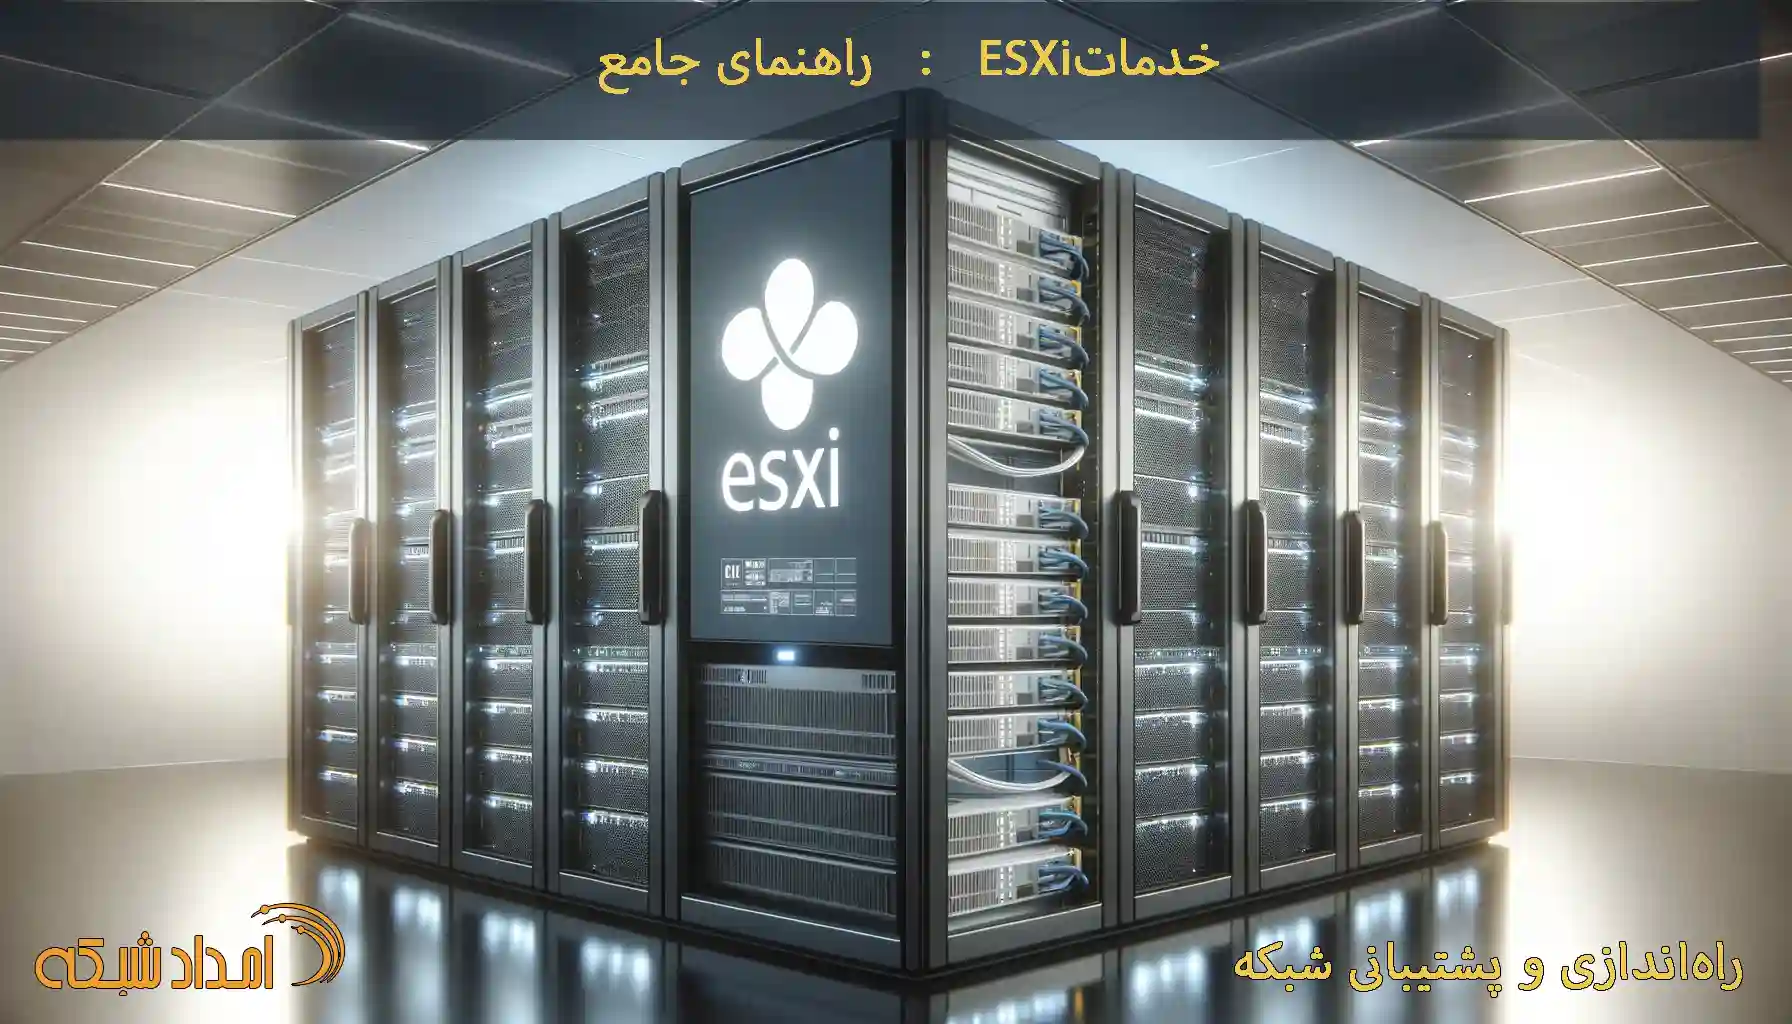 ESXi یک هایپروایزر نوع 1 از شرکت VMware است که به مدیران شبکه و فناوری اطلاعات امکان می‌دهد سرورها را مجازی‌سازی کرده، منابع را بهینه‌سازی کنند و امنیت داده‌ها را افزایش دهند. در این مقاله، به بررسی کاربردهای ESXi، مراحل نصب و پیکربندی، و بهترین شیوه‌های مدیریت سرورها با استفاده از این پلتفرم پرداخته شده است.